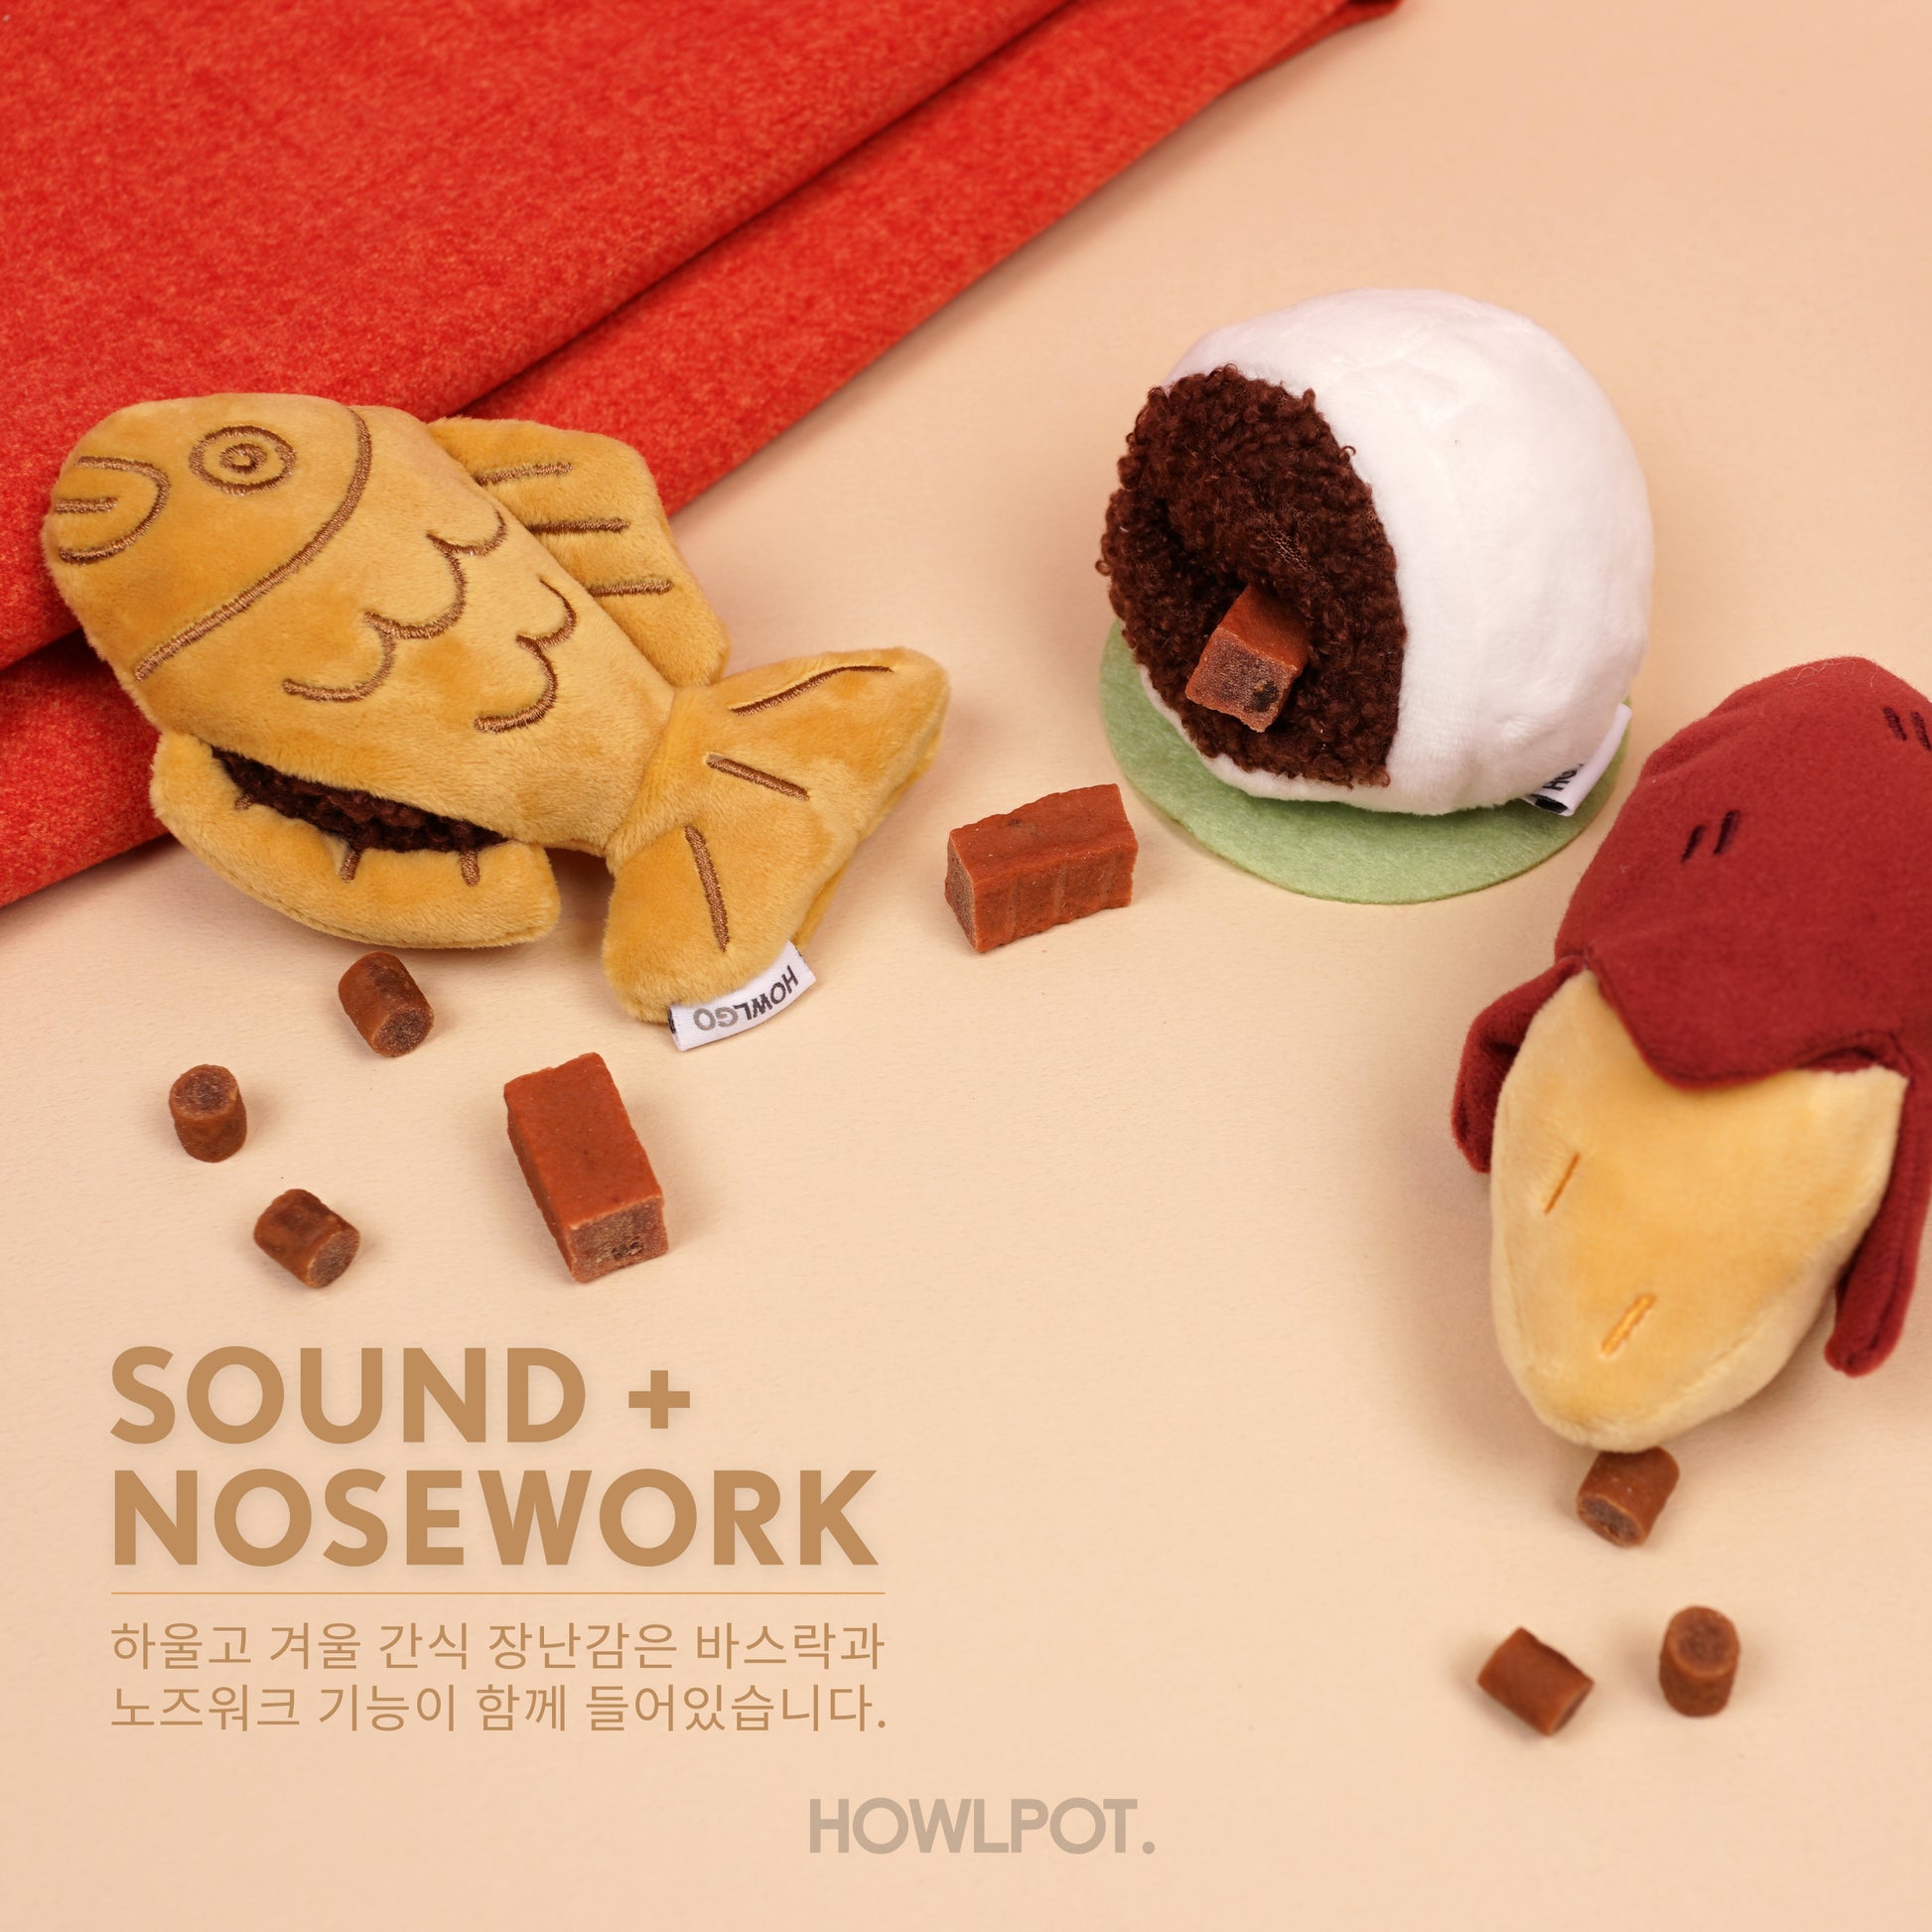 Fish Bread Nosework Toy - Howlpotusa